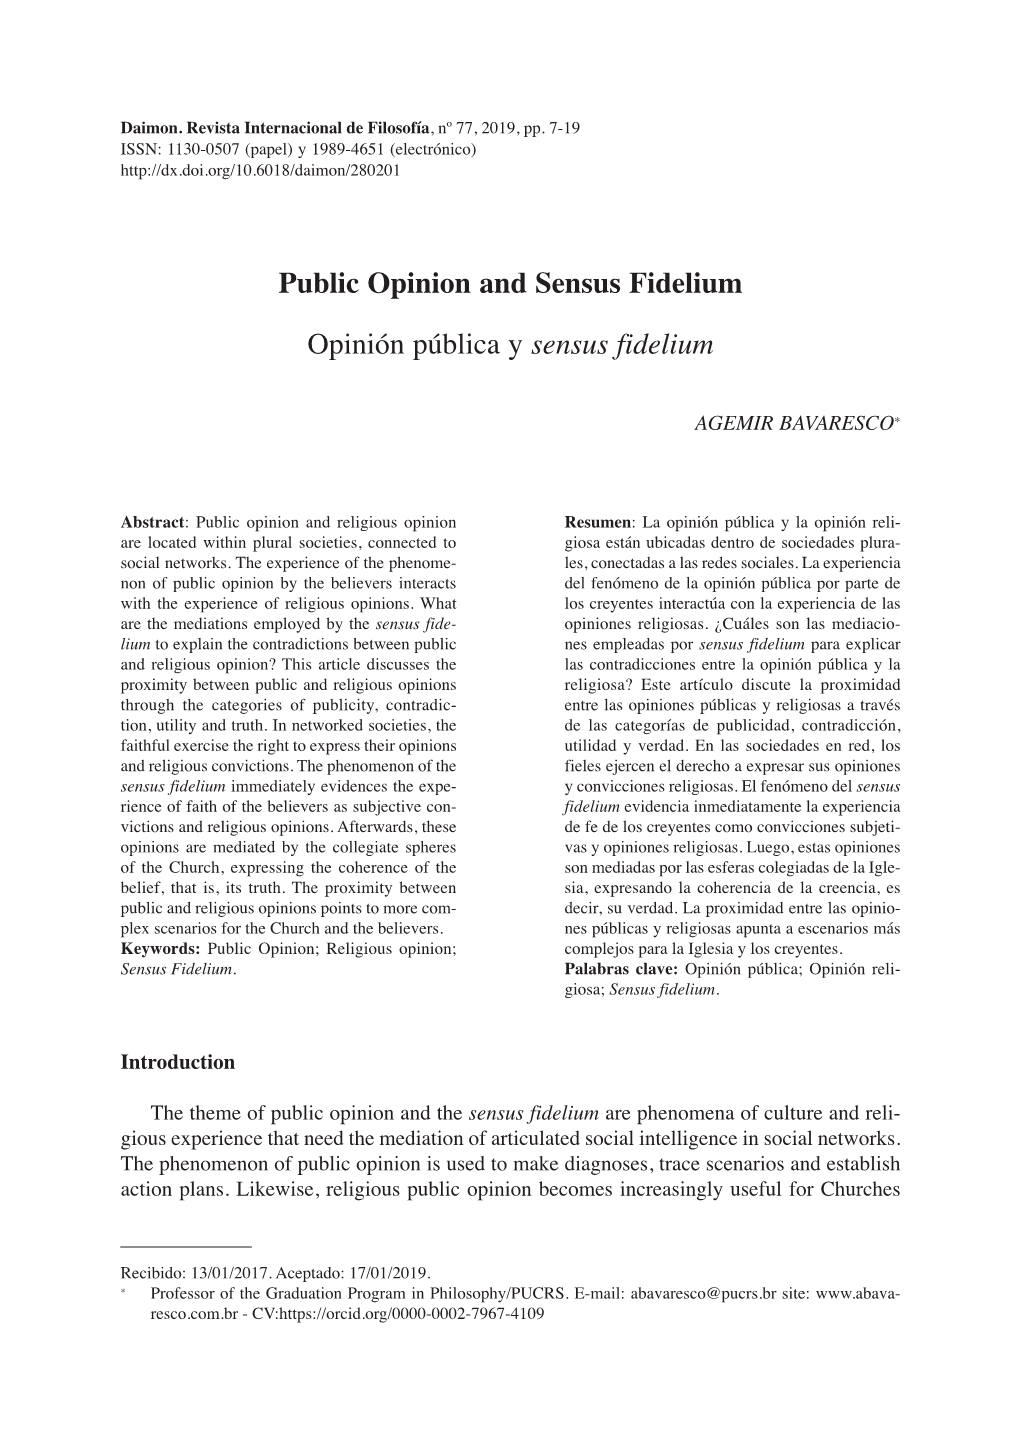 Public Opinion and Sensus Fidelium Opinión Pública Y Sensus Fidelium